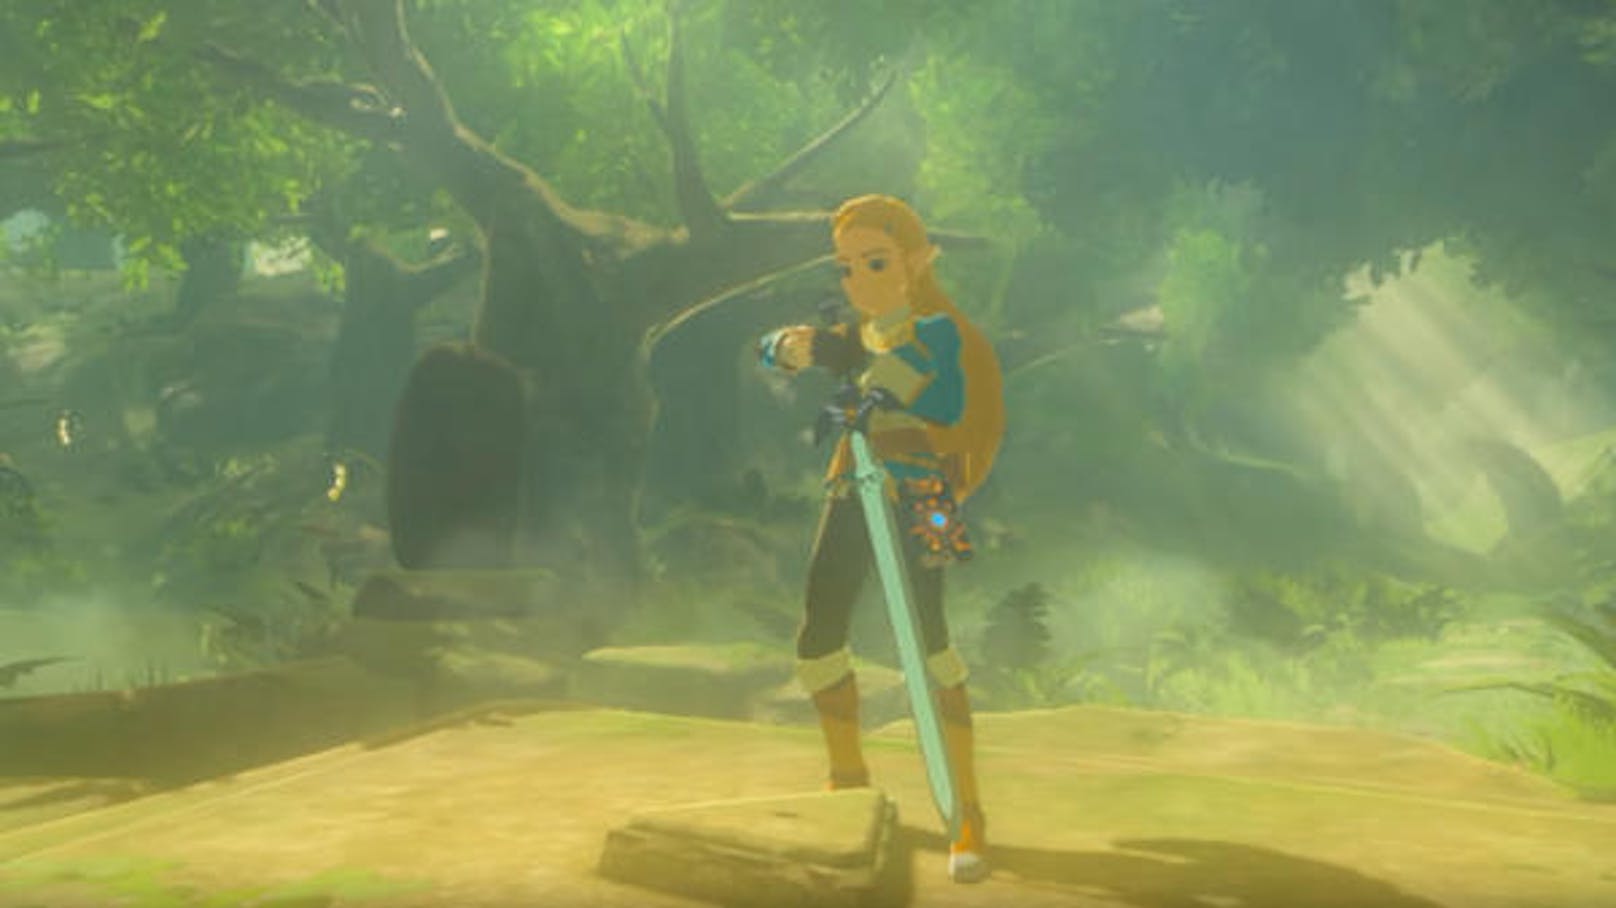 Bislang ist es offiziell nicht möglich, den Nintendo-Titel "Breath of the Wild" als Prinzessin Zelda zu spielen. Das Zelda Conversion Project, das mit zwei Personen startete und mittlerweile auf 20 Personen angewachsen ist, hat dies jedoch in die eigenen Hände genommen. Es hat das Spiel so verändert, dass Zelda anstelle von Link zur Hauptfigur wird. Da es sich hierbei nicht um ein offizielles Projekt von Nintendo handelt, ist unklar, ob die modifizierte Version je veröffentlicht wird. <a href="https://www.youtube.com/watch?v=0b8mzbXjs6A">Hier können Sie sich jedoch ansehen, wie die Prinzessin in der Hauptrolle aussehen würde.</a>